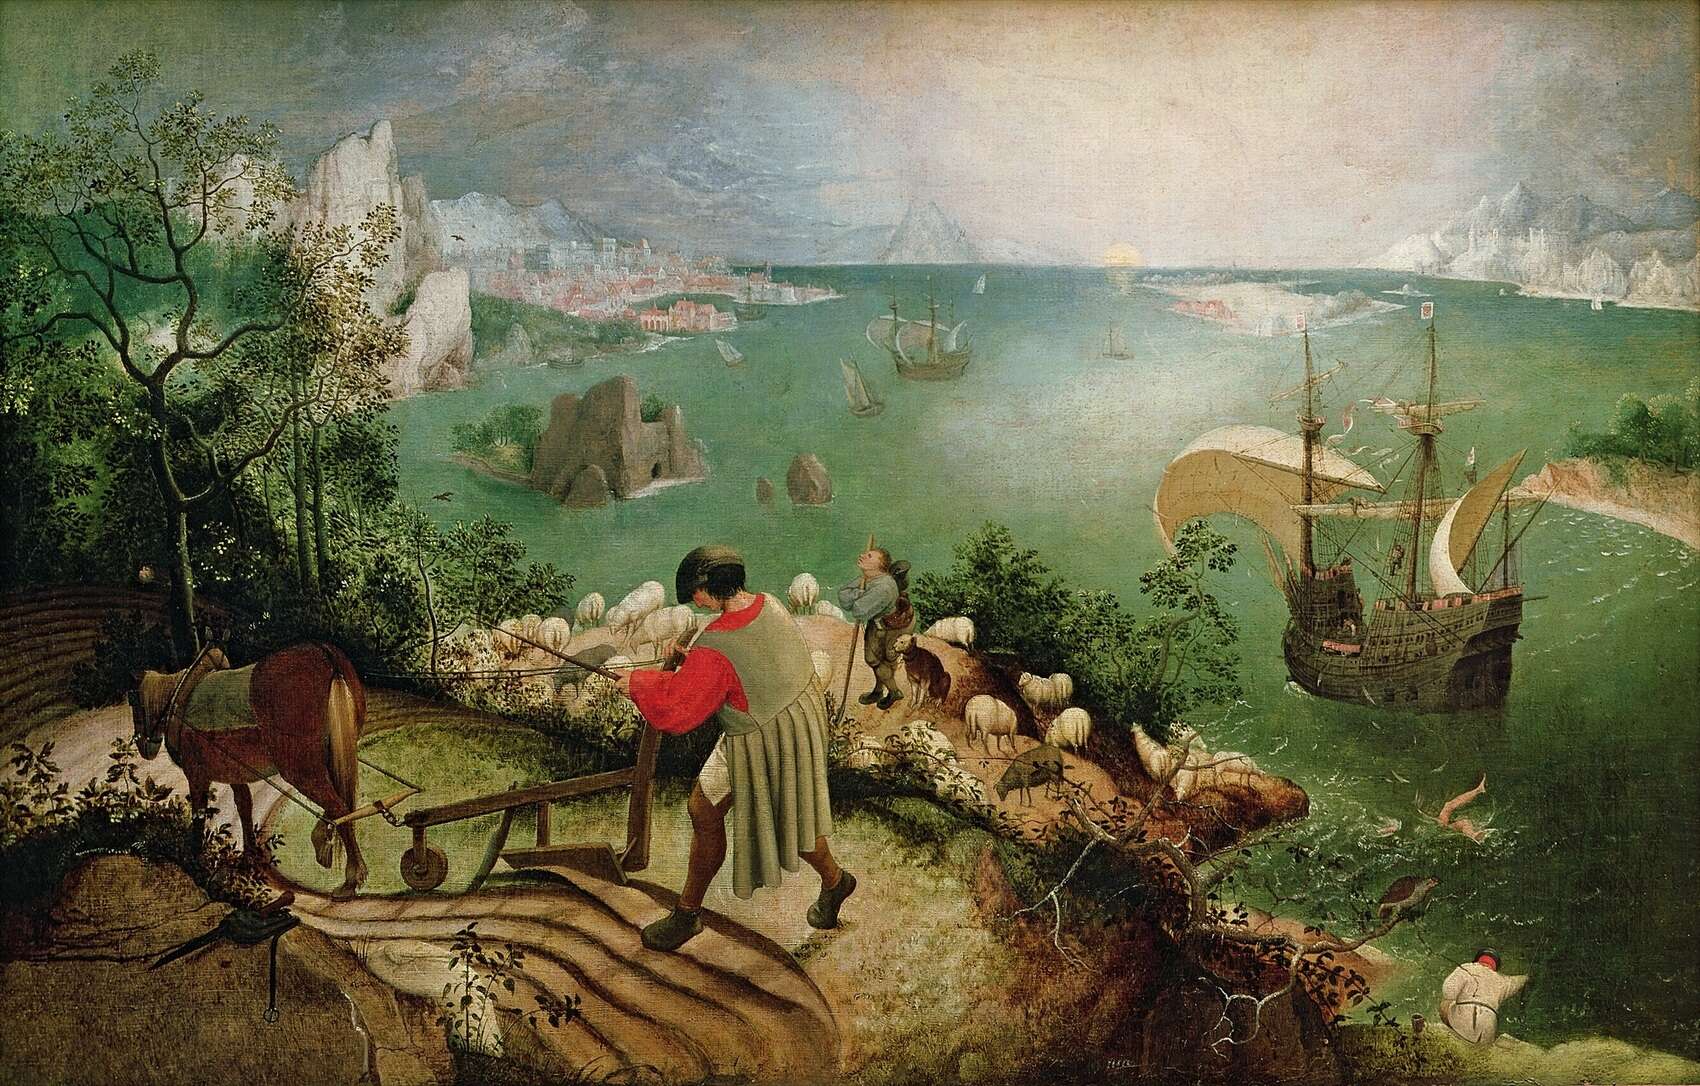 https://en.wikipedia.org/wiki/File:Pieter_Bruegel_de_Oude_-_De_val_van_Icarus.jpg